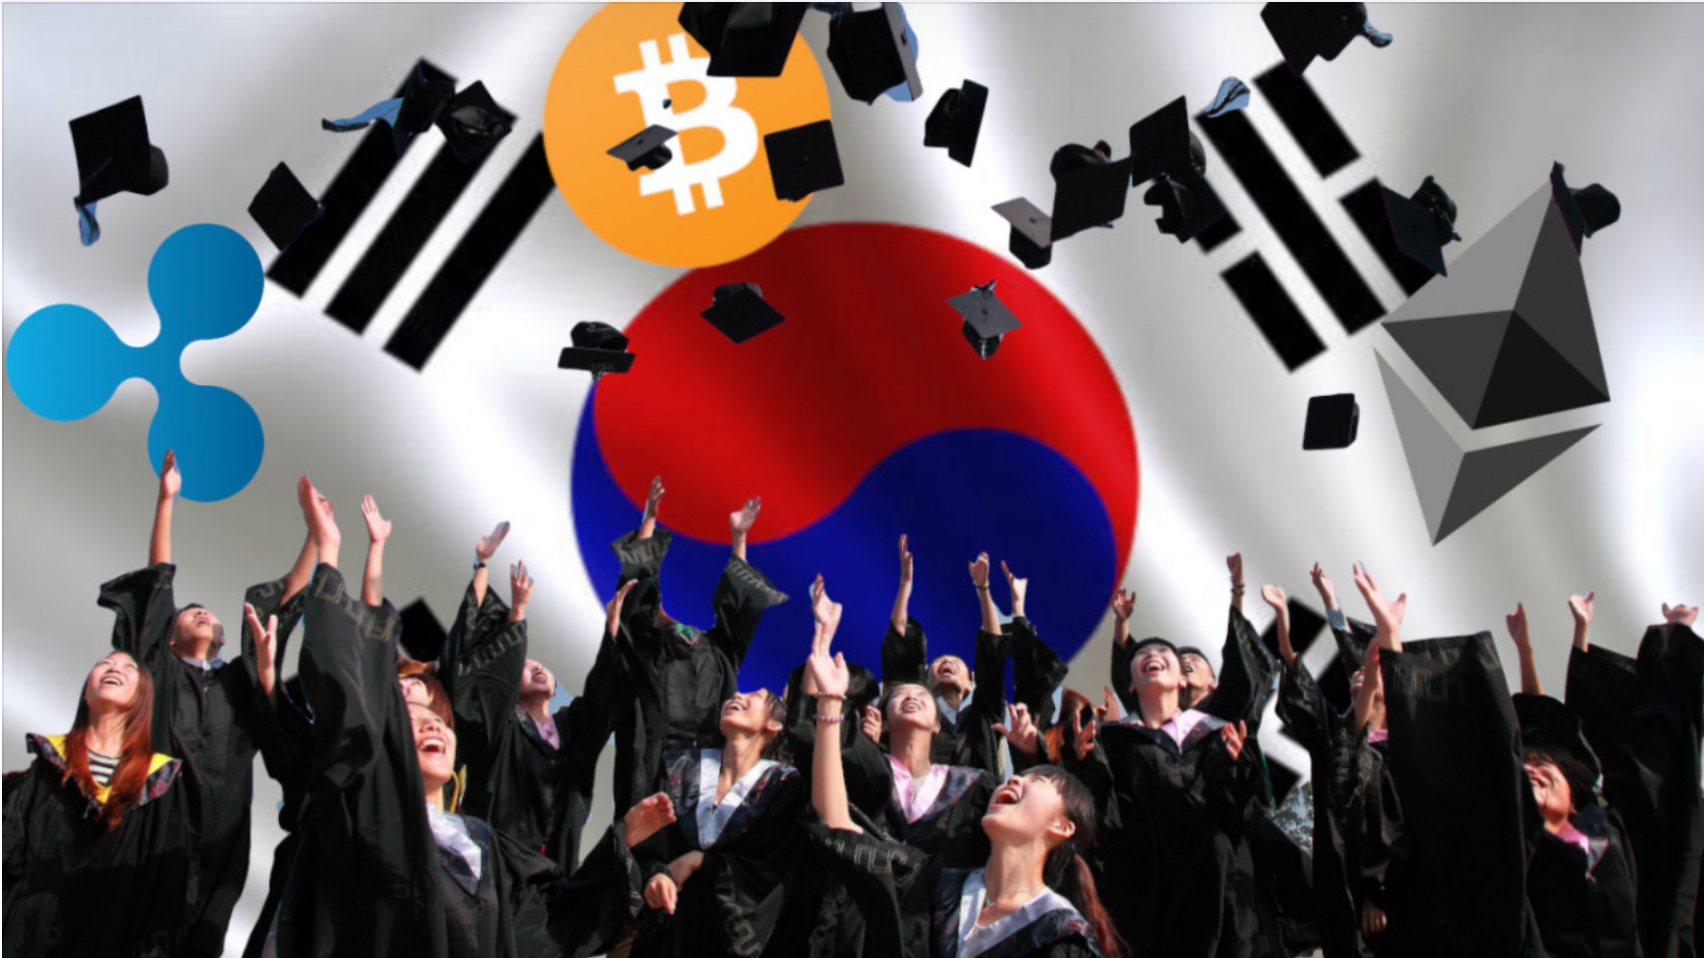 Đại học Hàn Quốc công bố khuôn viên mới về blockchain, AI - Ảnh 1.